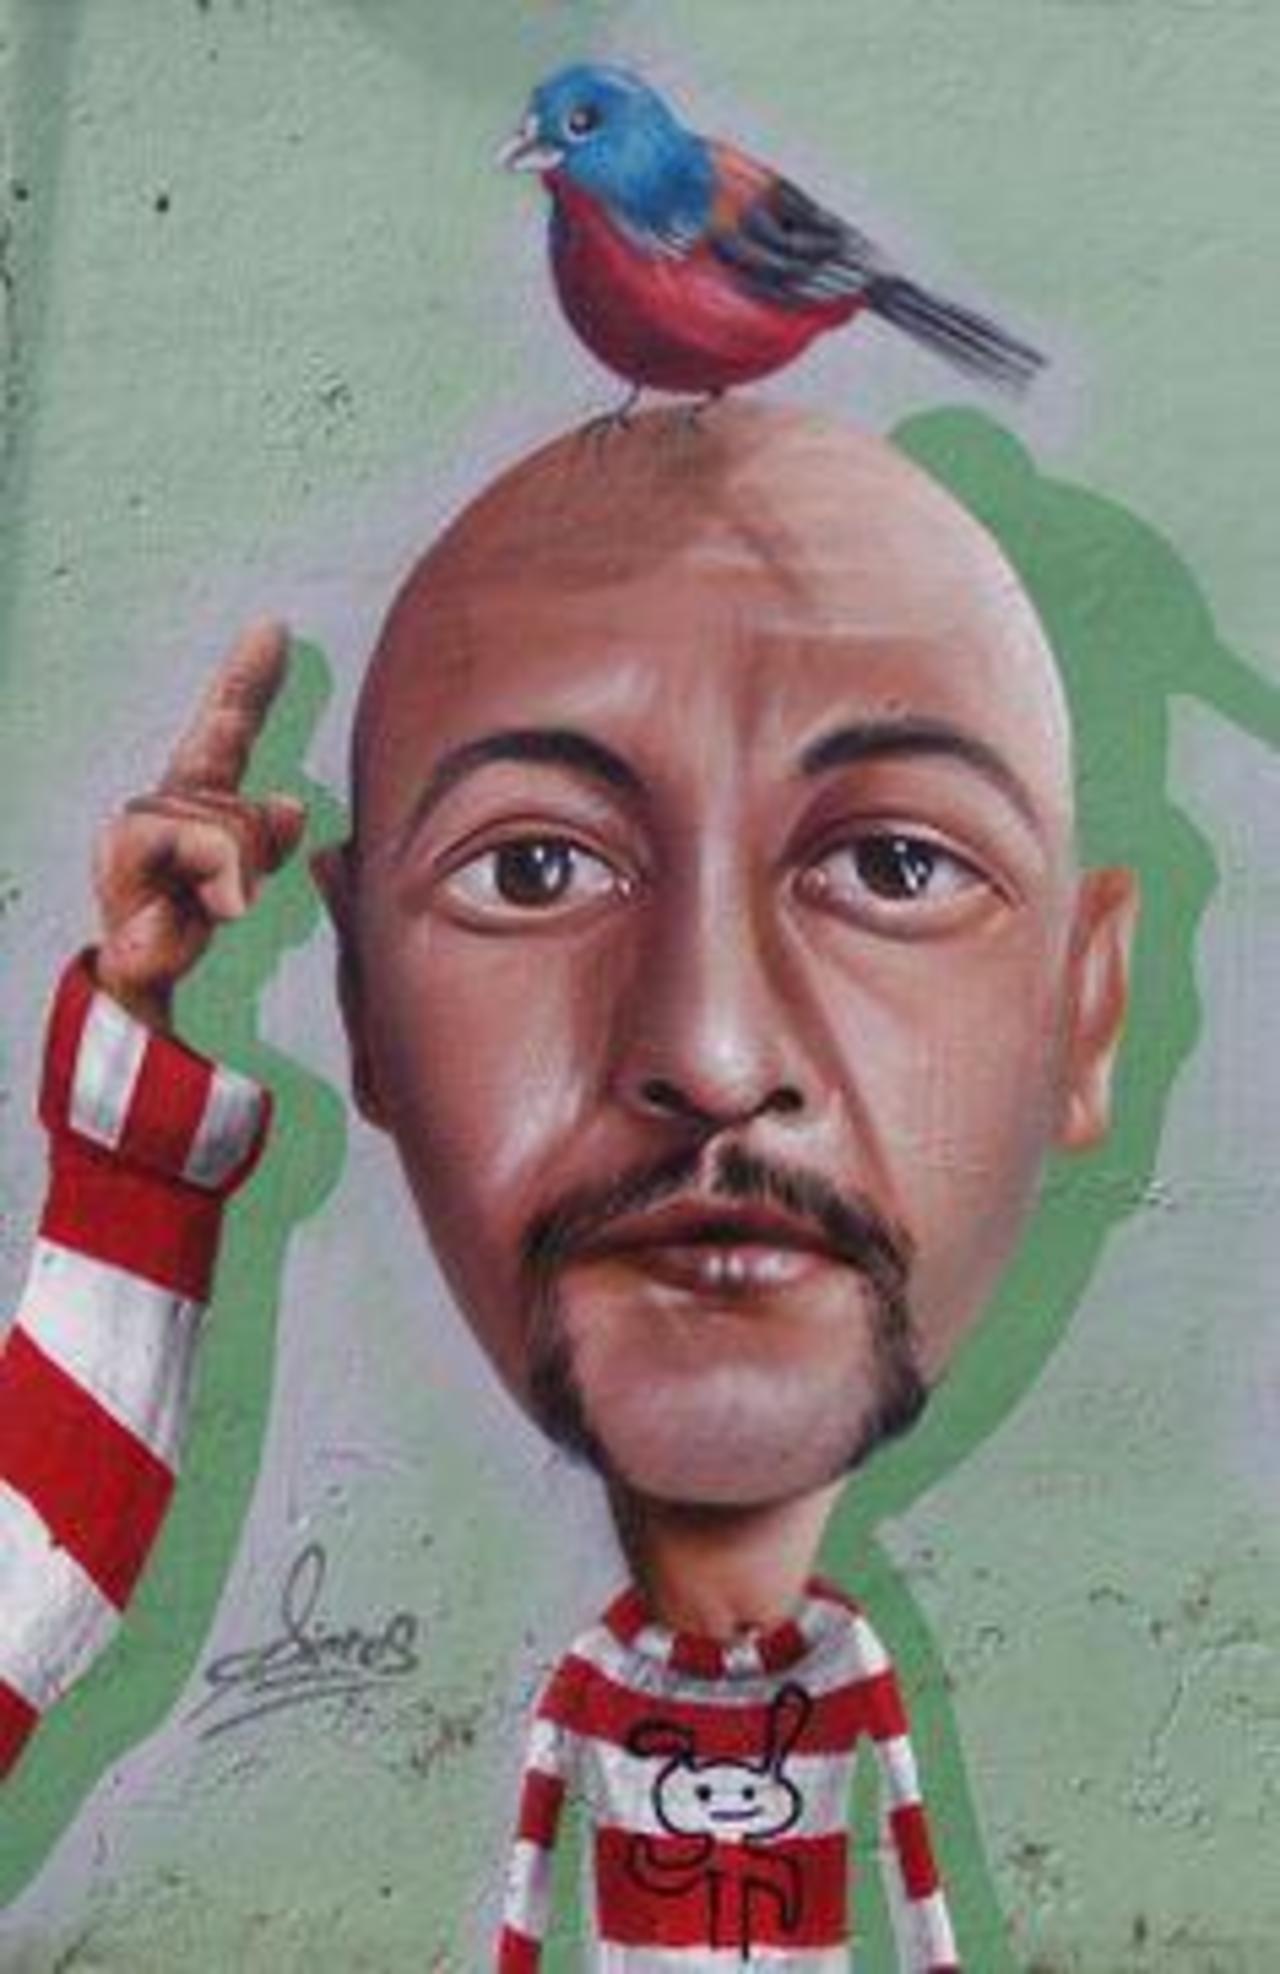 Brazilian artist Sipros 
#streetart #art #graffiti #mural http://t.co/3gAIijIN3B